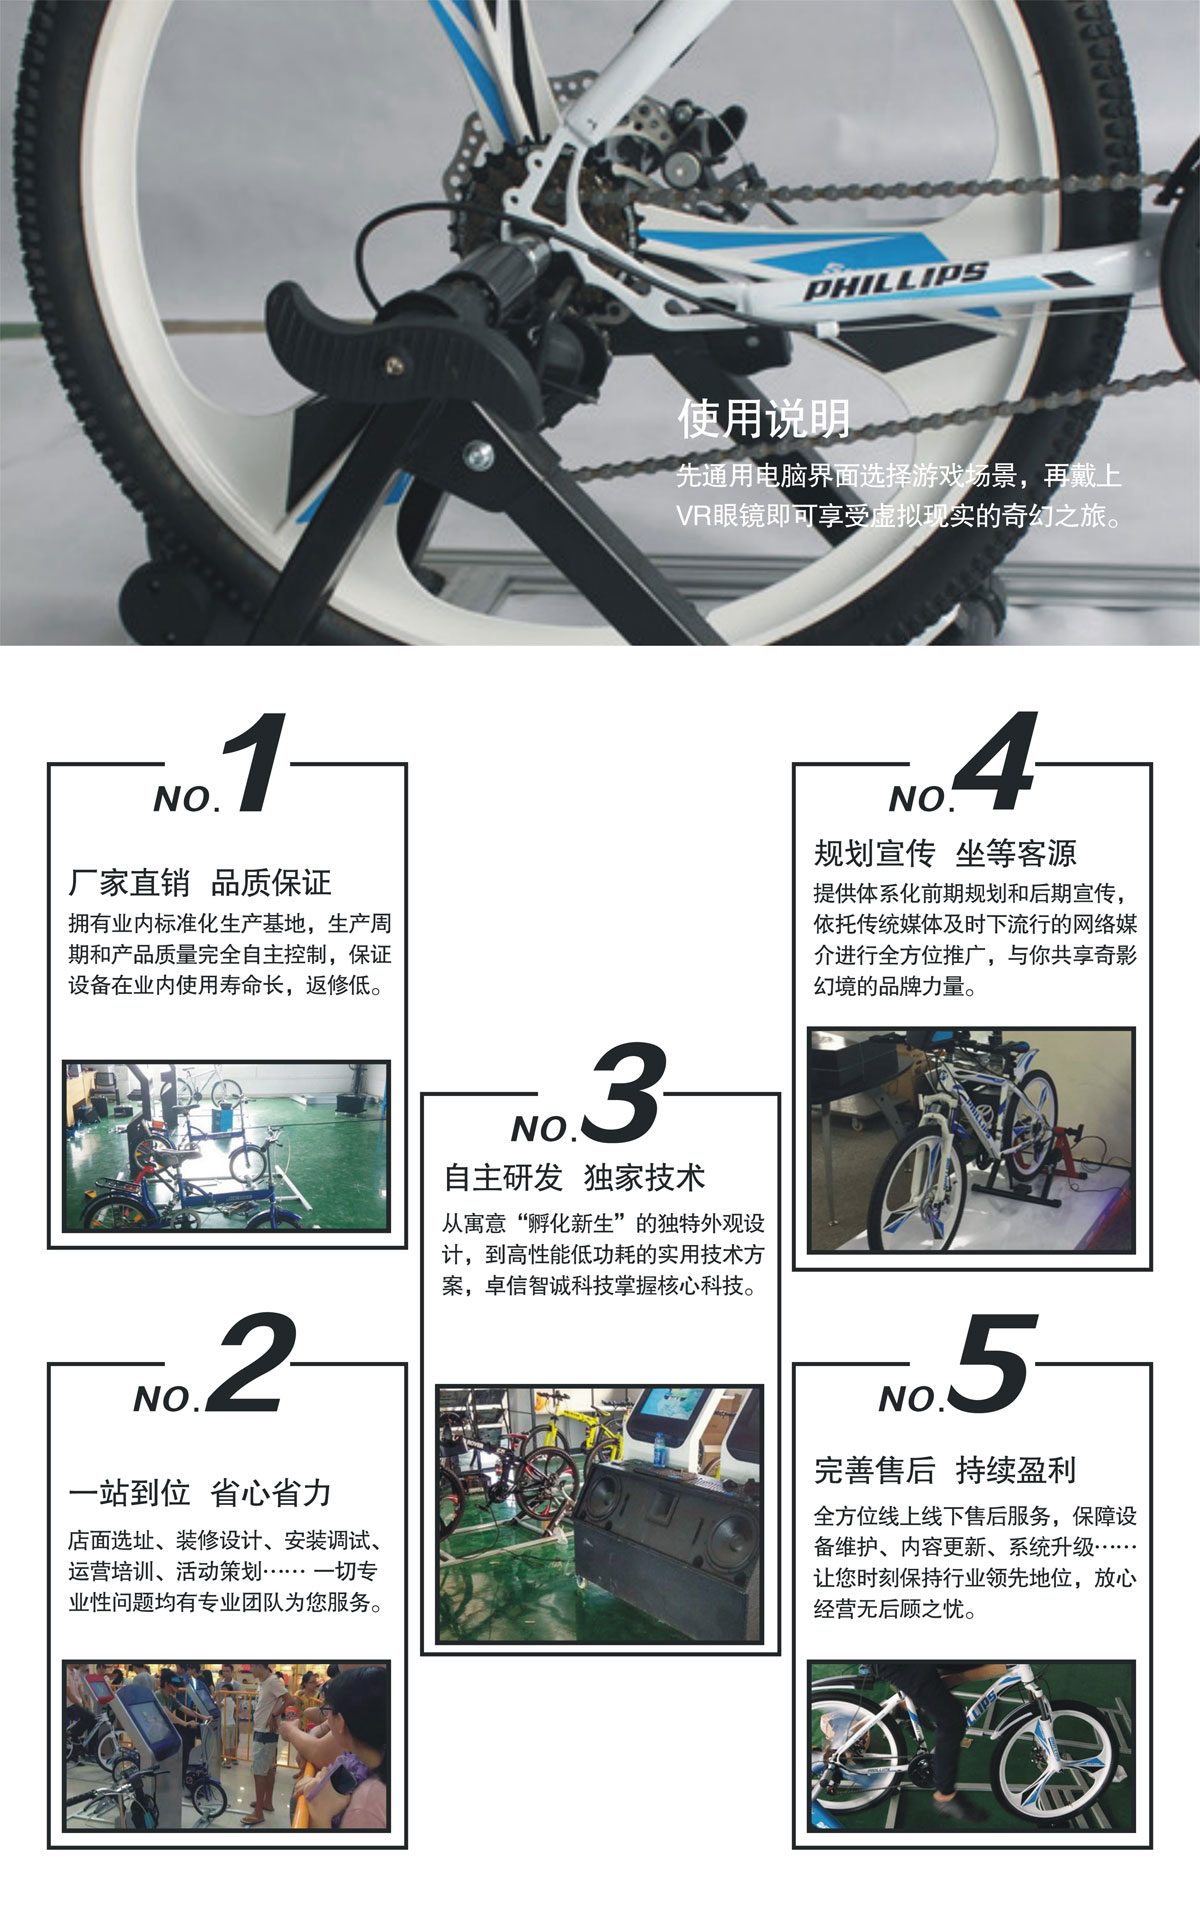 06-VR自行车使用说明.jpg